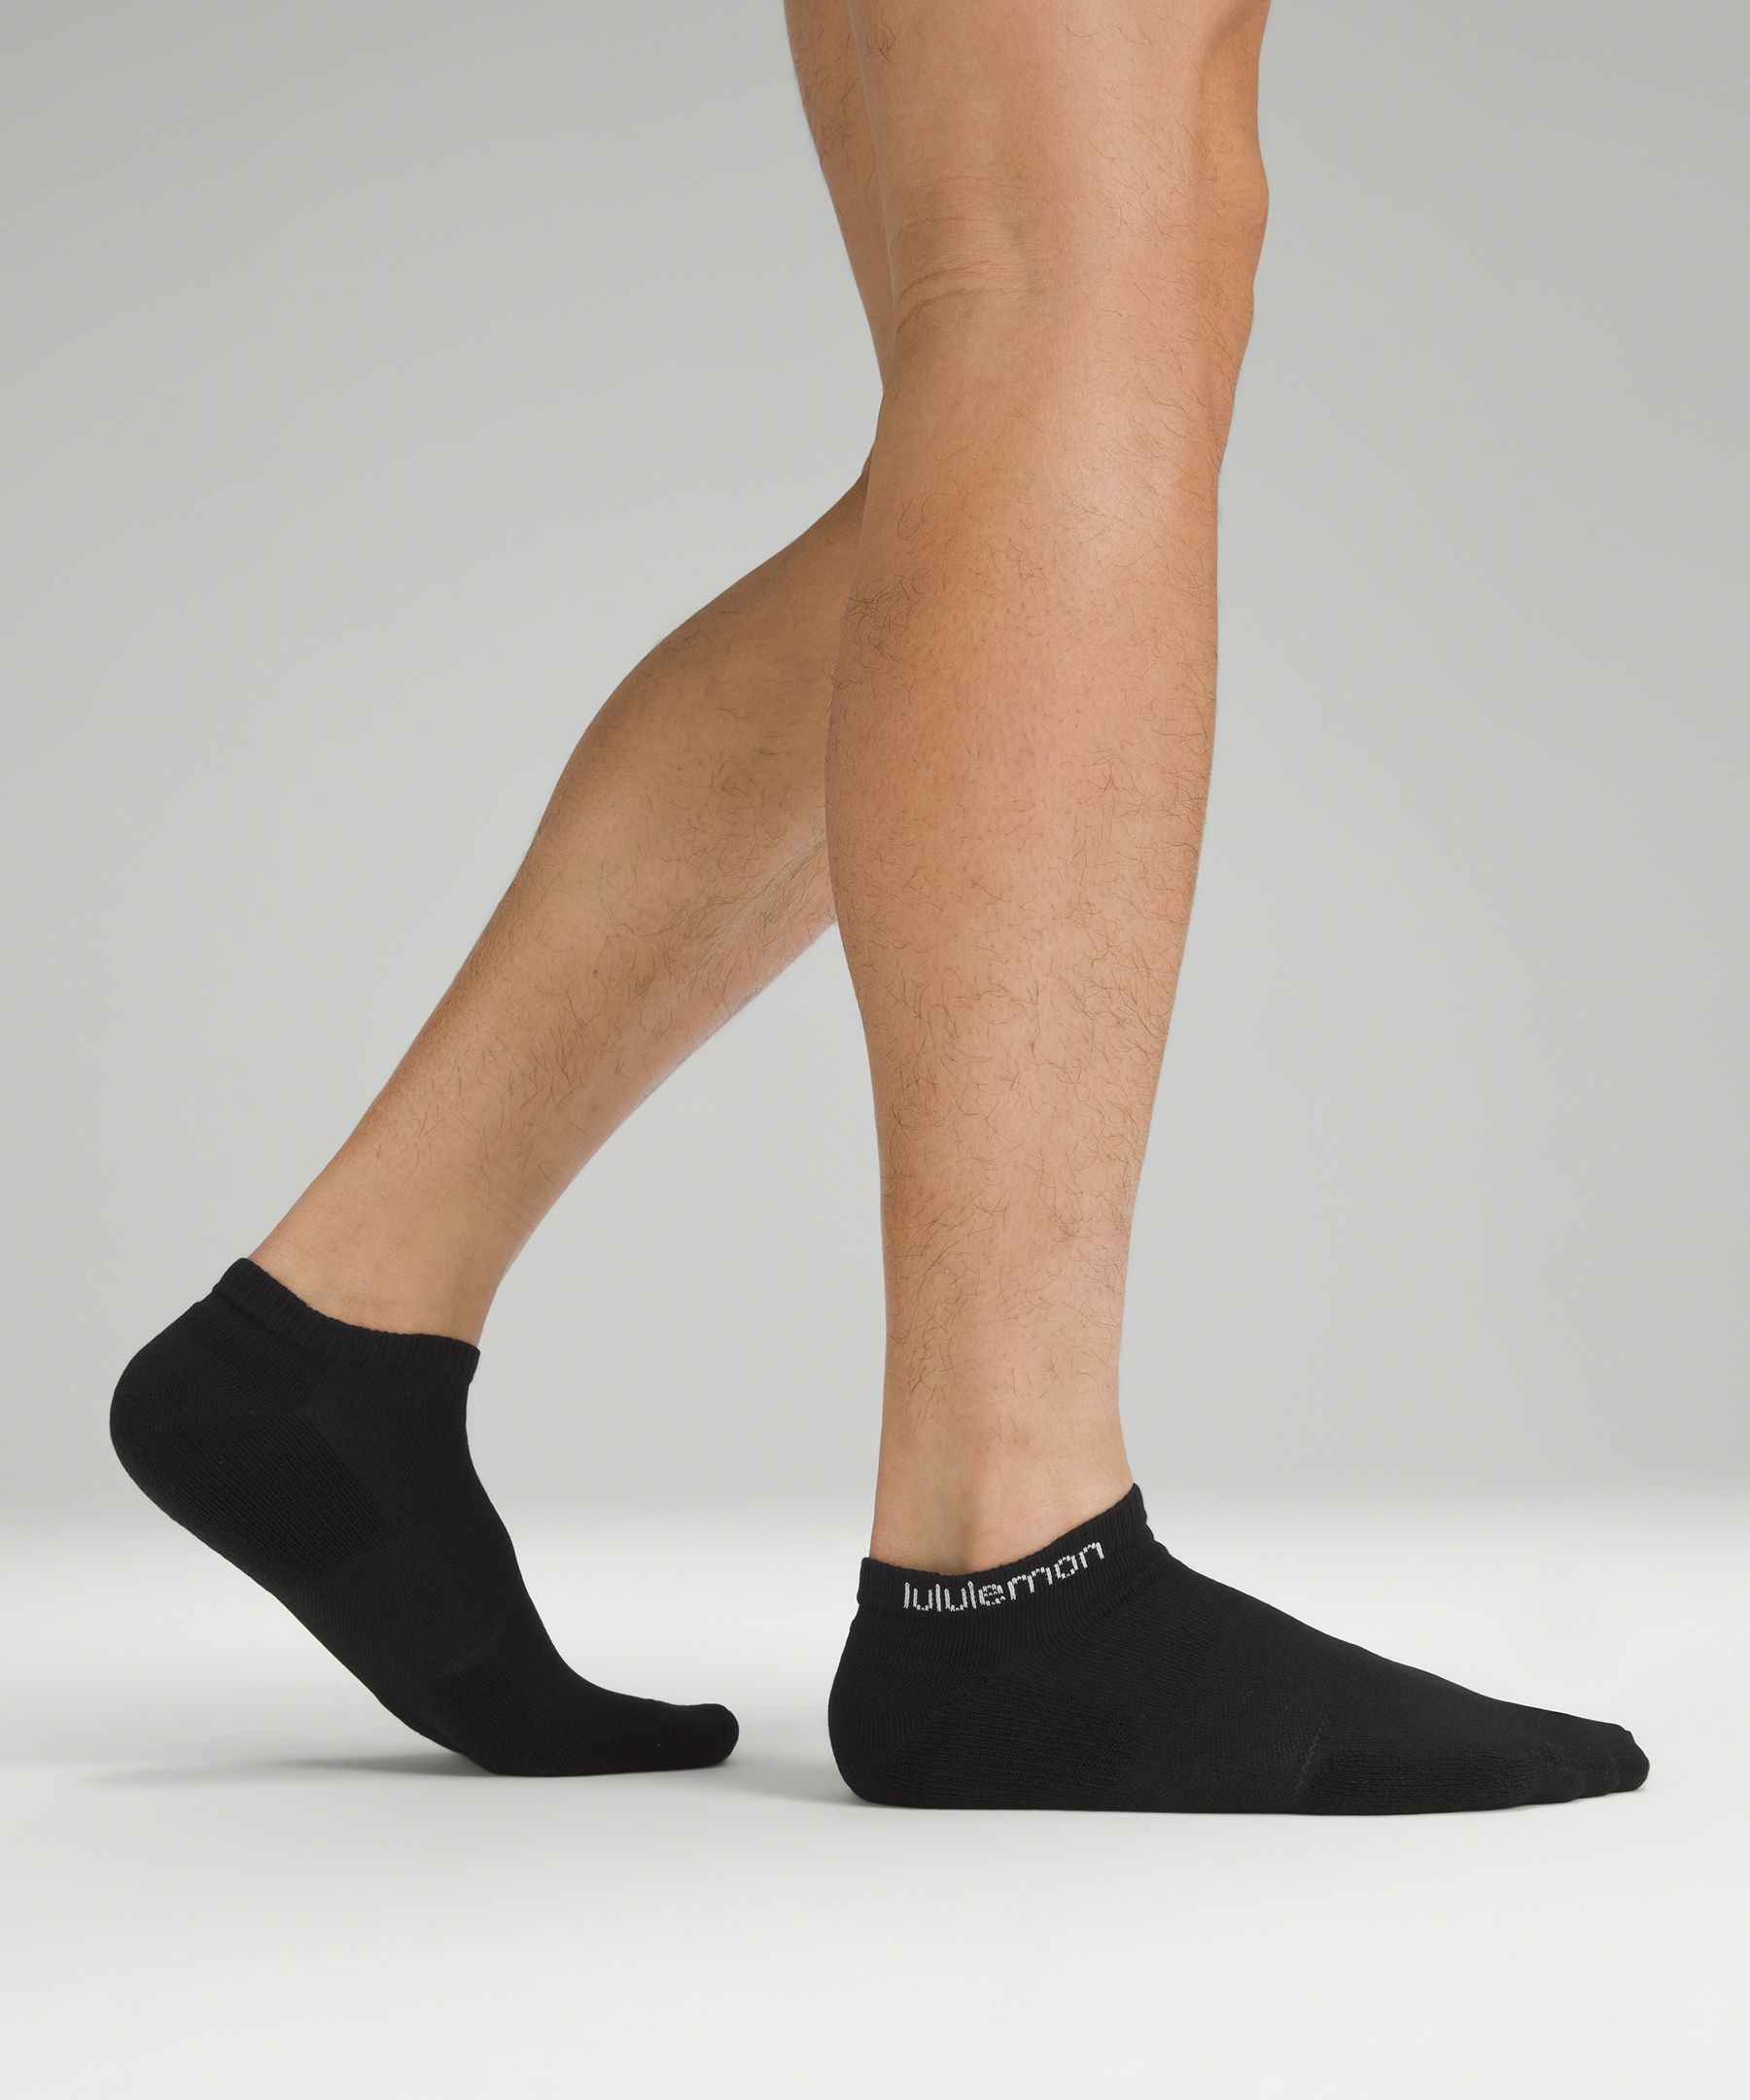 Men's Ankle Socks